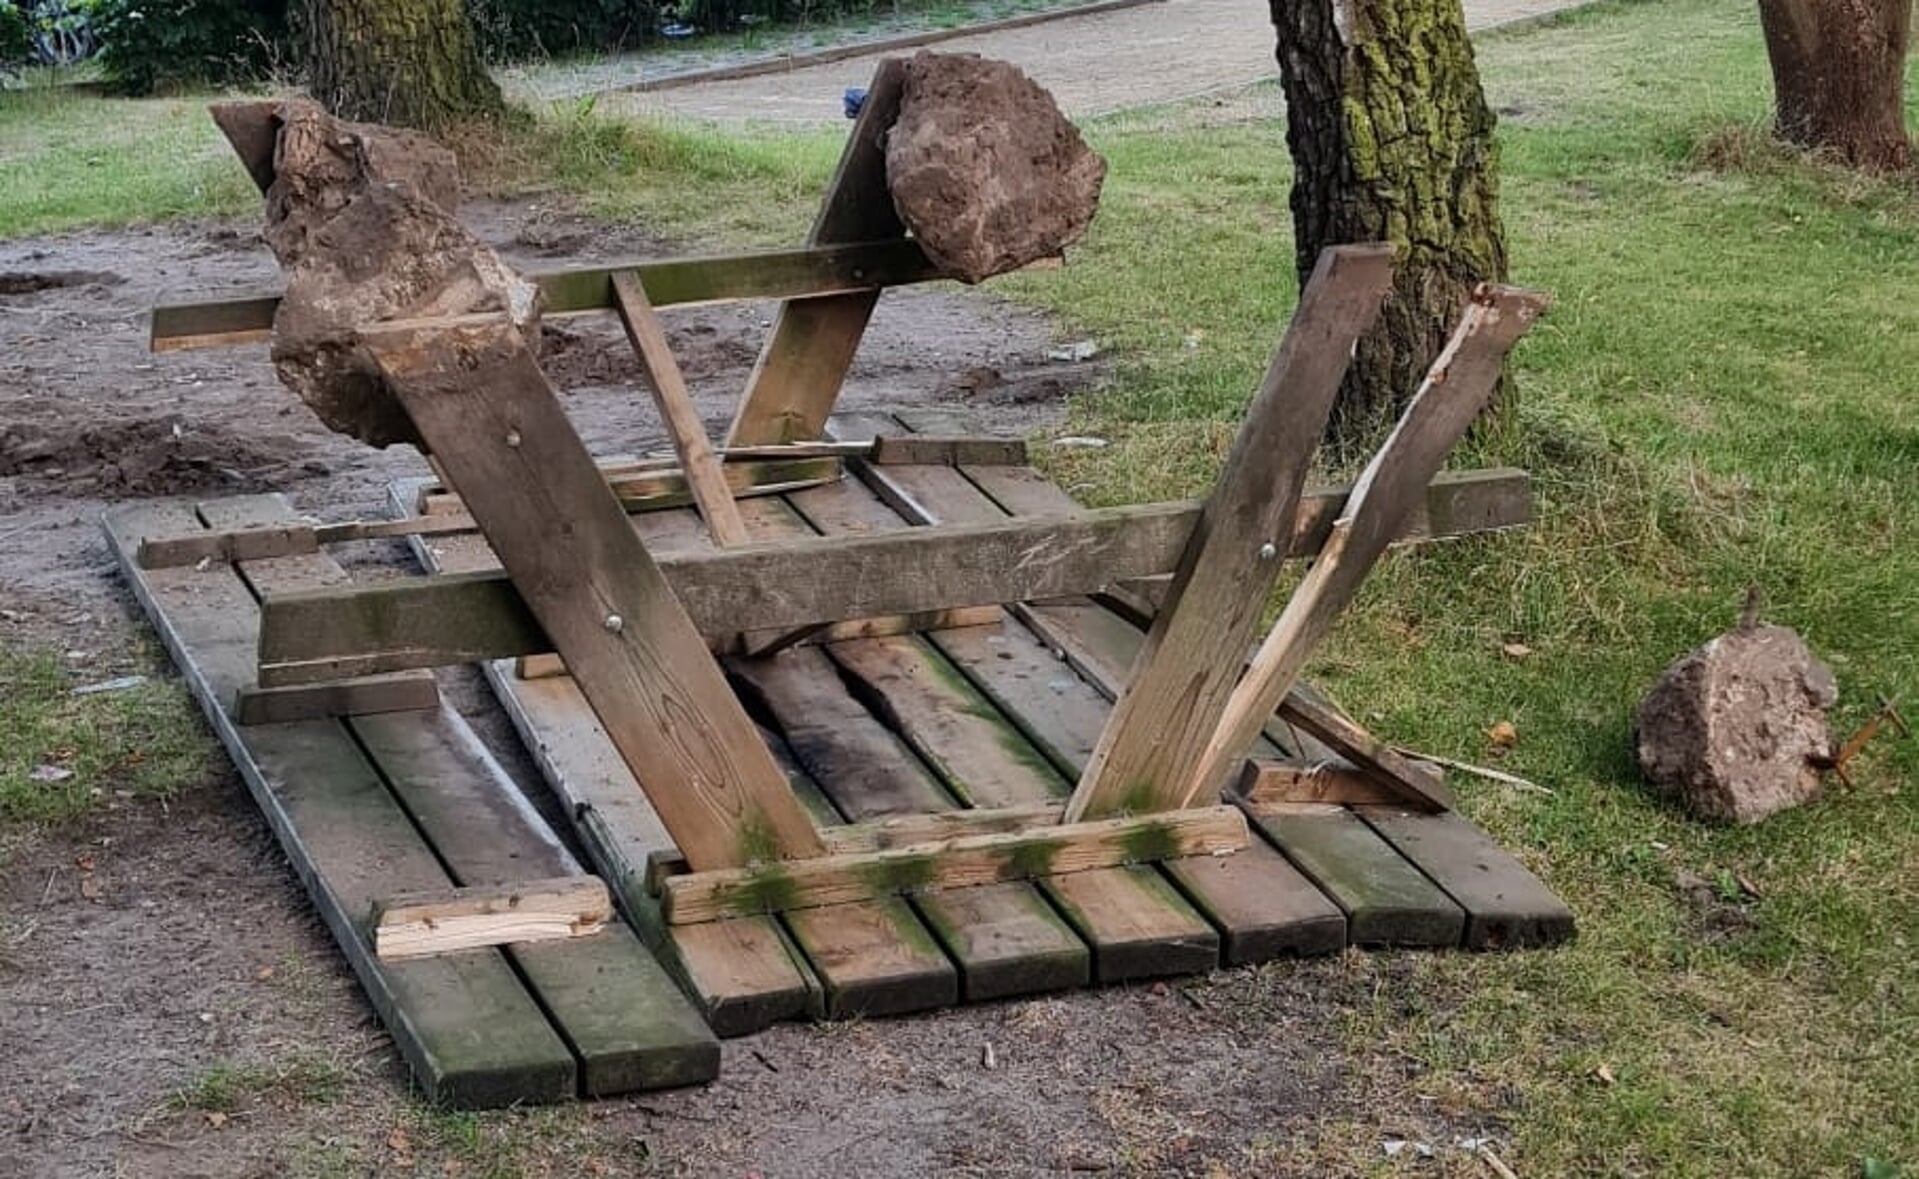 De picknicktafel is uit de grond getrokken, terwijl de poten in beton verankerd waren.